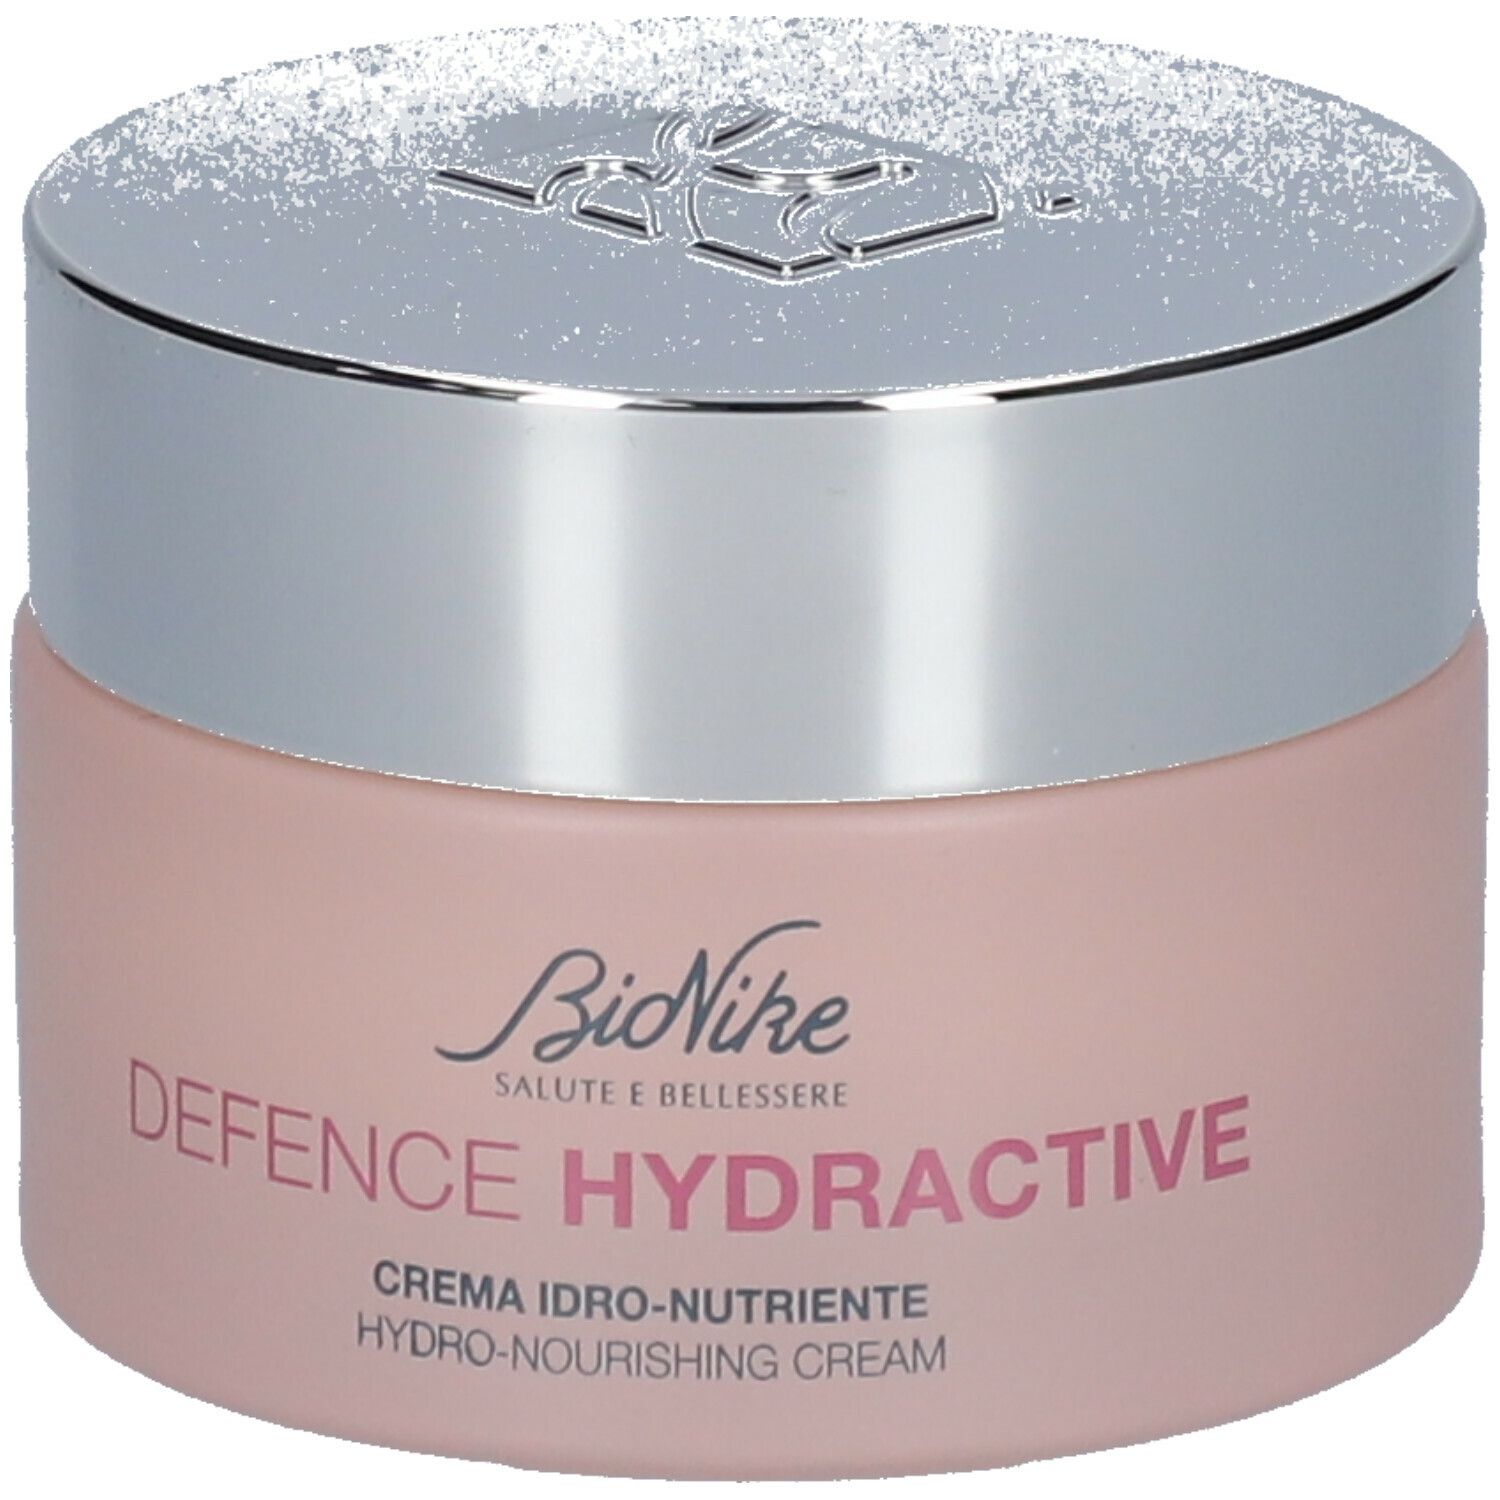 BioNike Defence Hydractive Crema Idro-Nutriente